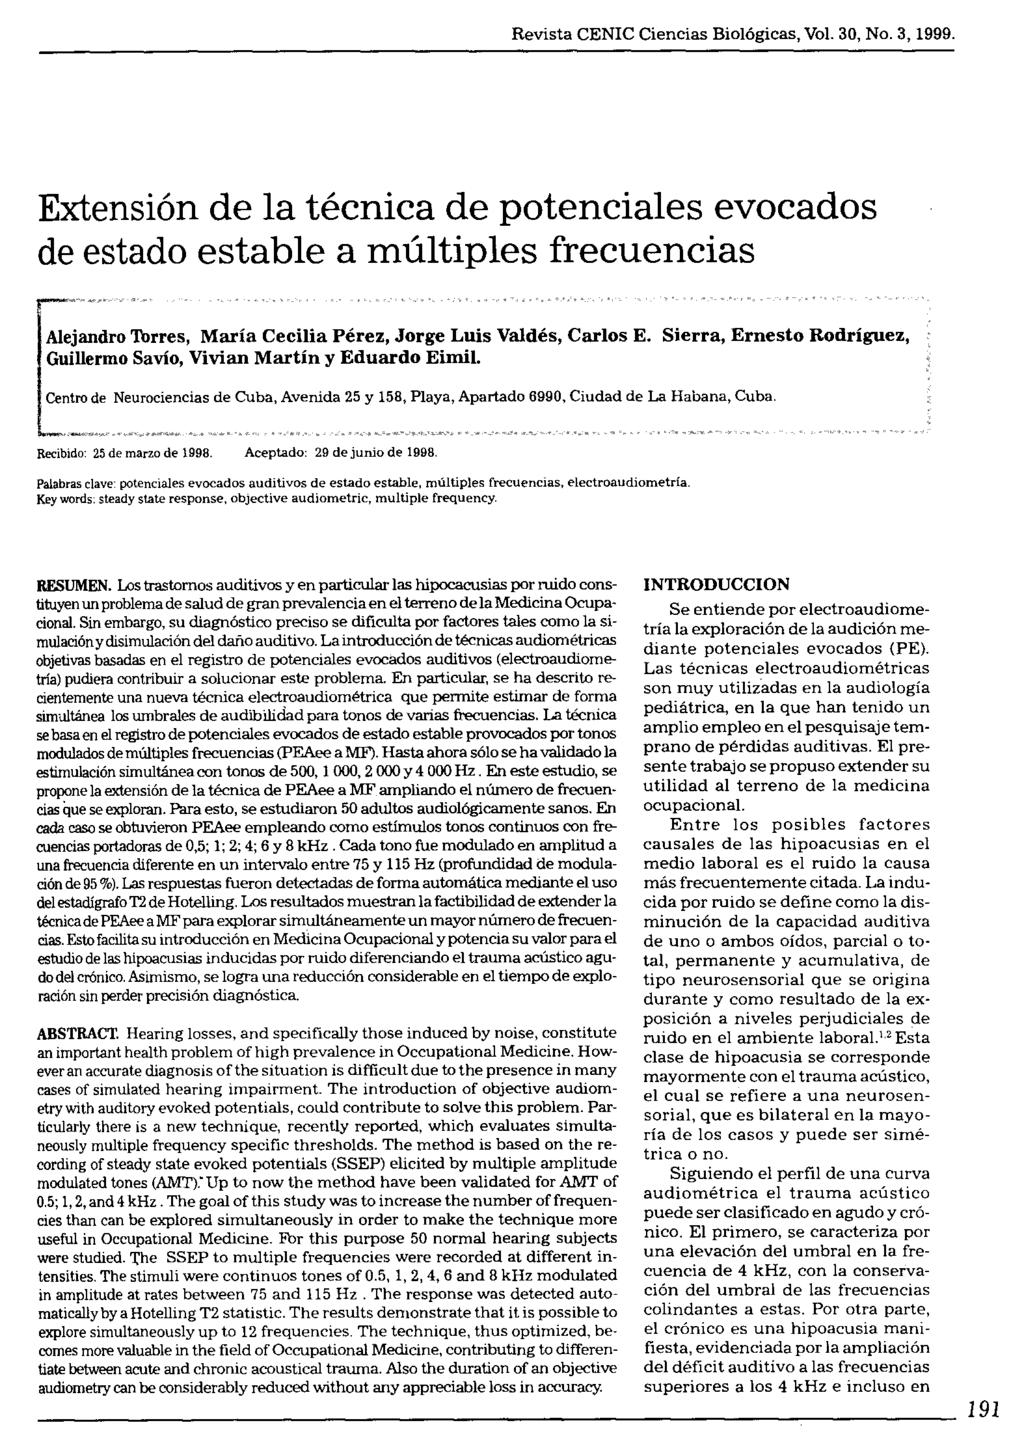 Revista CENIC Ciencias Biológicas, Vol 30, No 3, 1999 Extensión de la técnica de potenciales evocados de estado estable a múltiples frecuencias Alejandro Thrres, María Cecilia Pérez, Jorge Luis